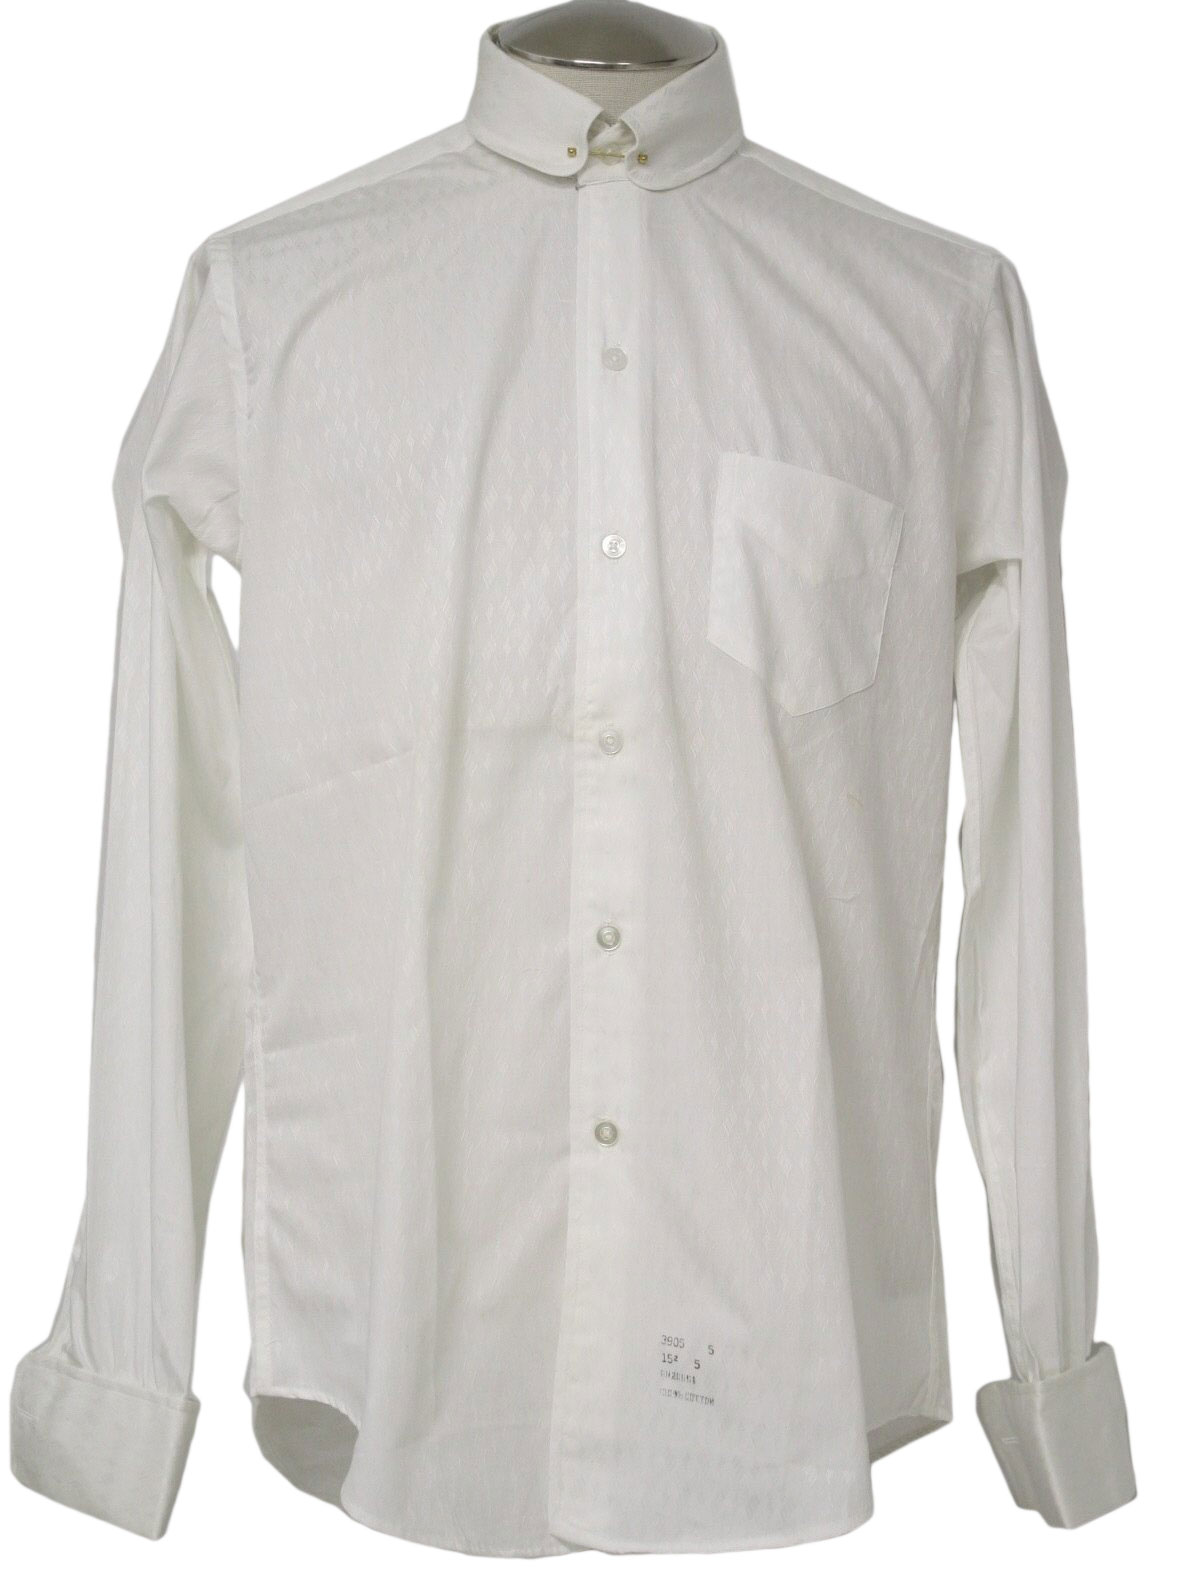 Vintage 60s Shirt: Early 60s -S K Leavitt San Francisco- Mens white ...